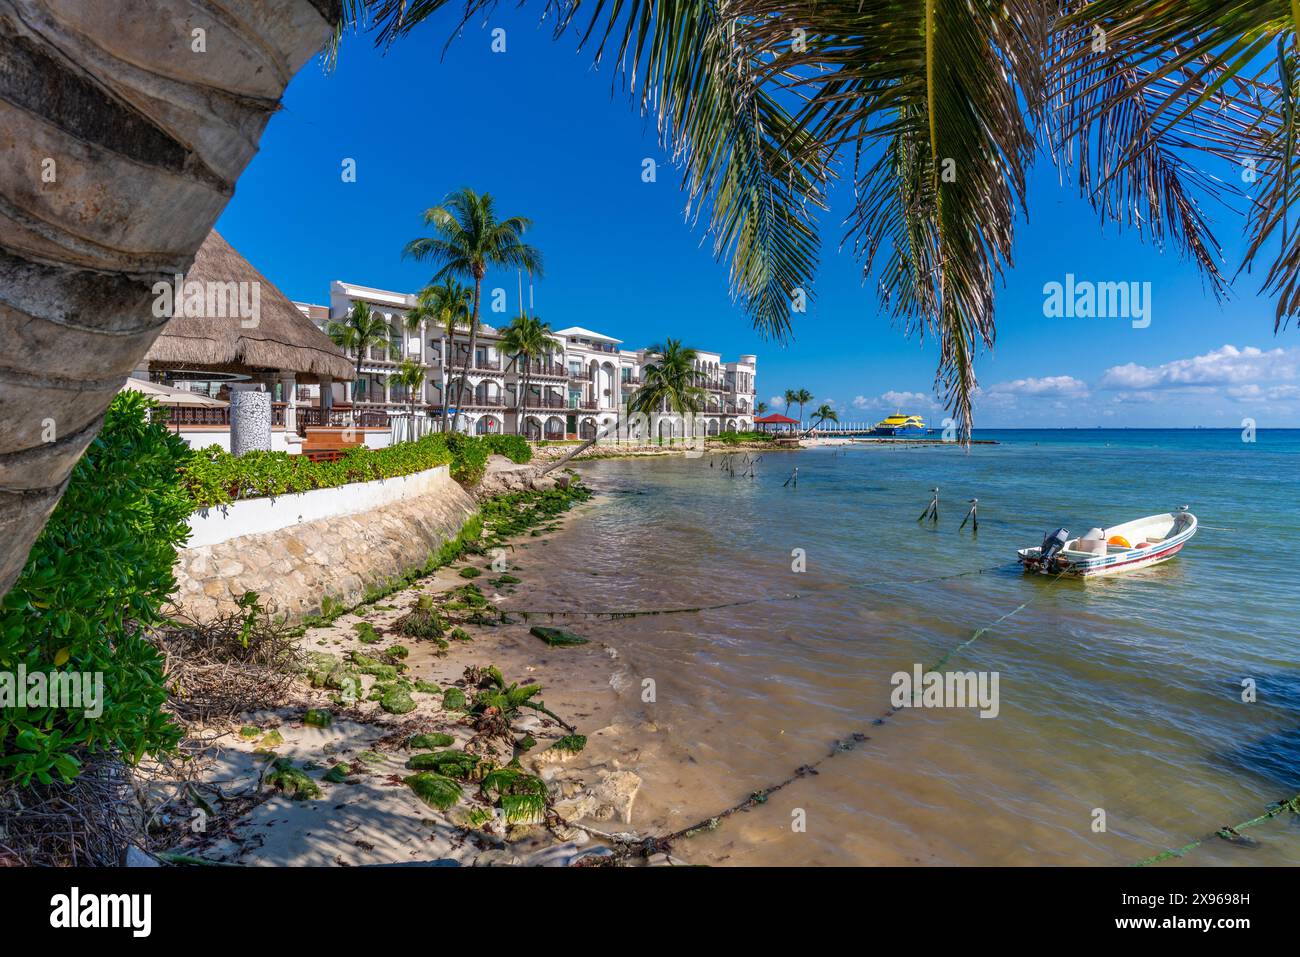 Vue de petit bateau dans le port, Playa del Carmen, Côte des Caraïbes, péninsule du Yucatan, Riviera Maya, Mexique, Amérique du Nord Banque D'Images